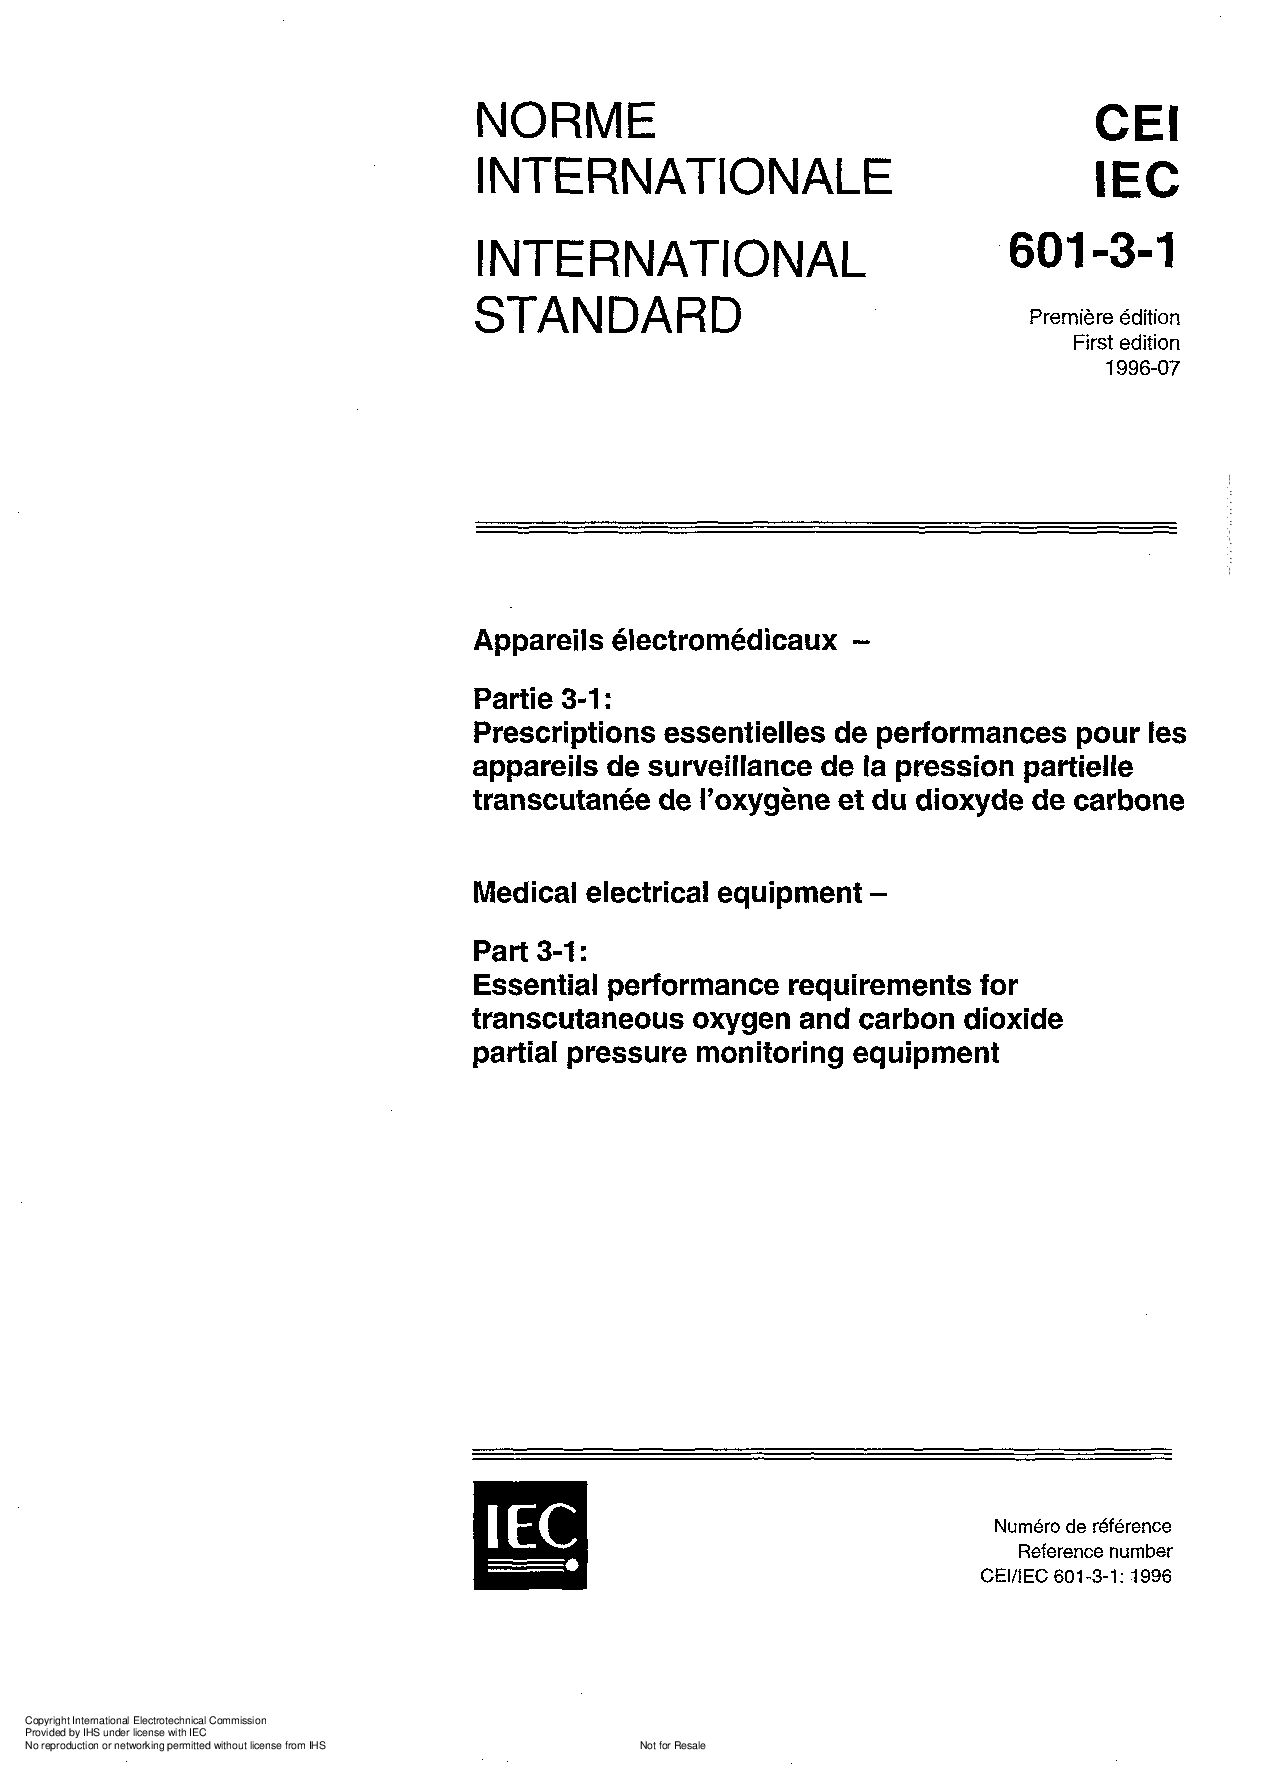 IEC 60601-3-1:1996封面图